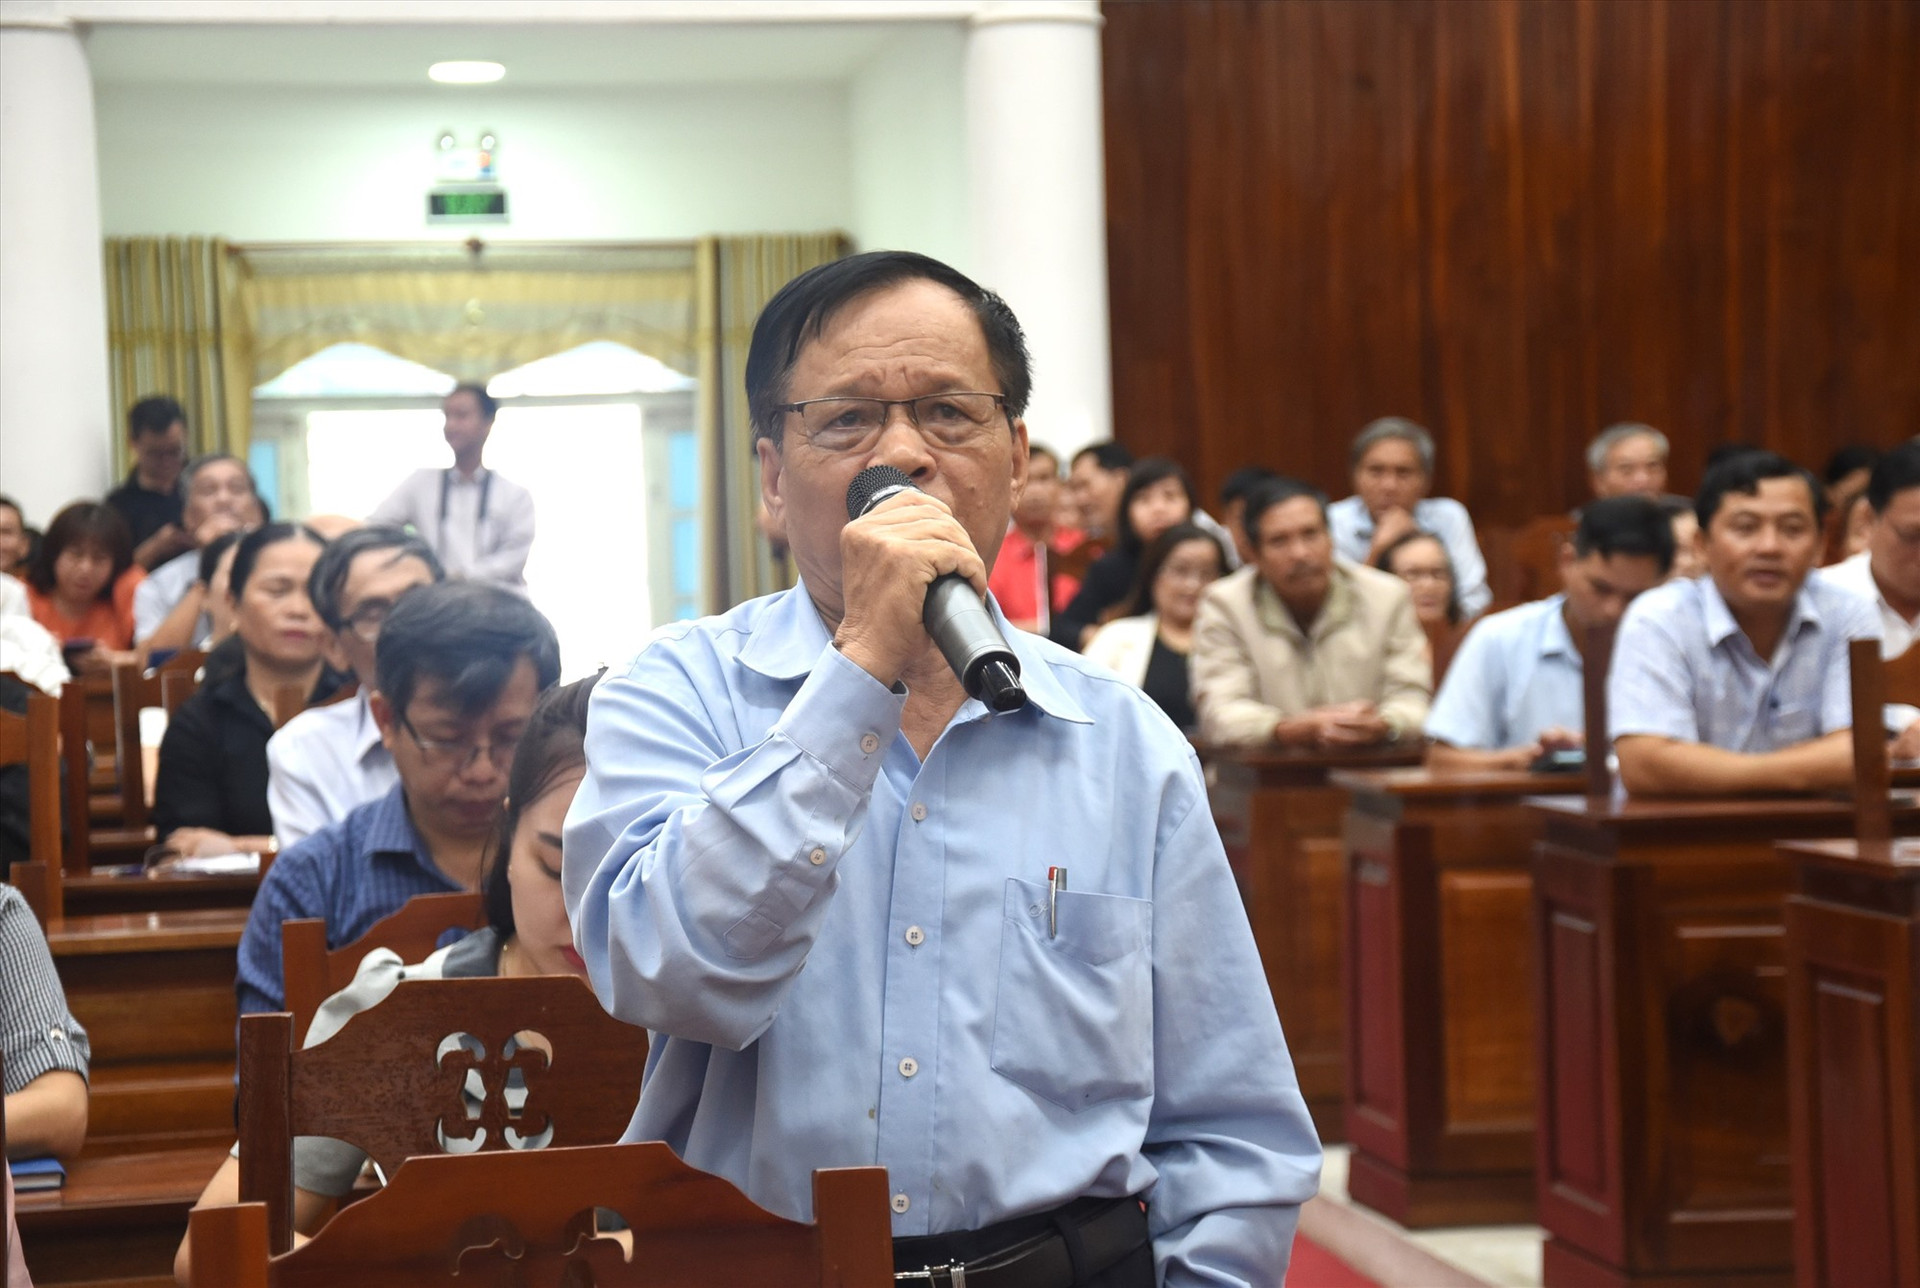 Cử tri Huỳnh Kim Xuân đề nghị nghiên cứu kỹ sáp nhập Tam Kỳ-Núi Thành-Phú Ninh. Ảnh: X.P